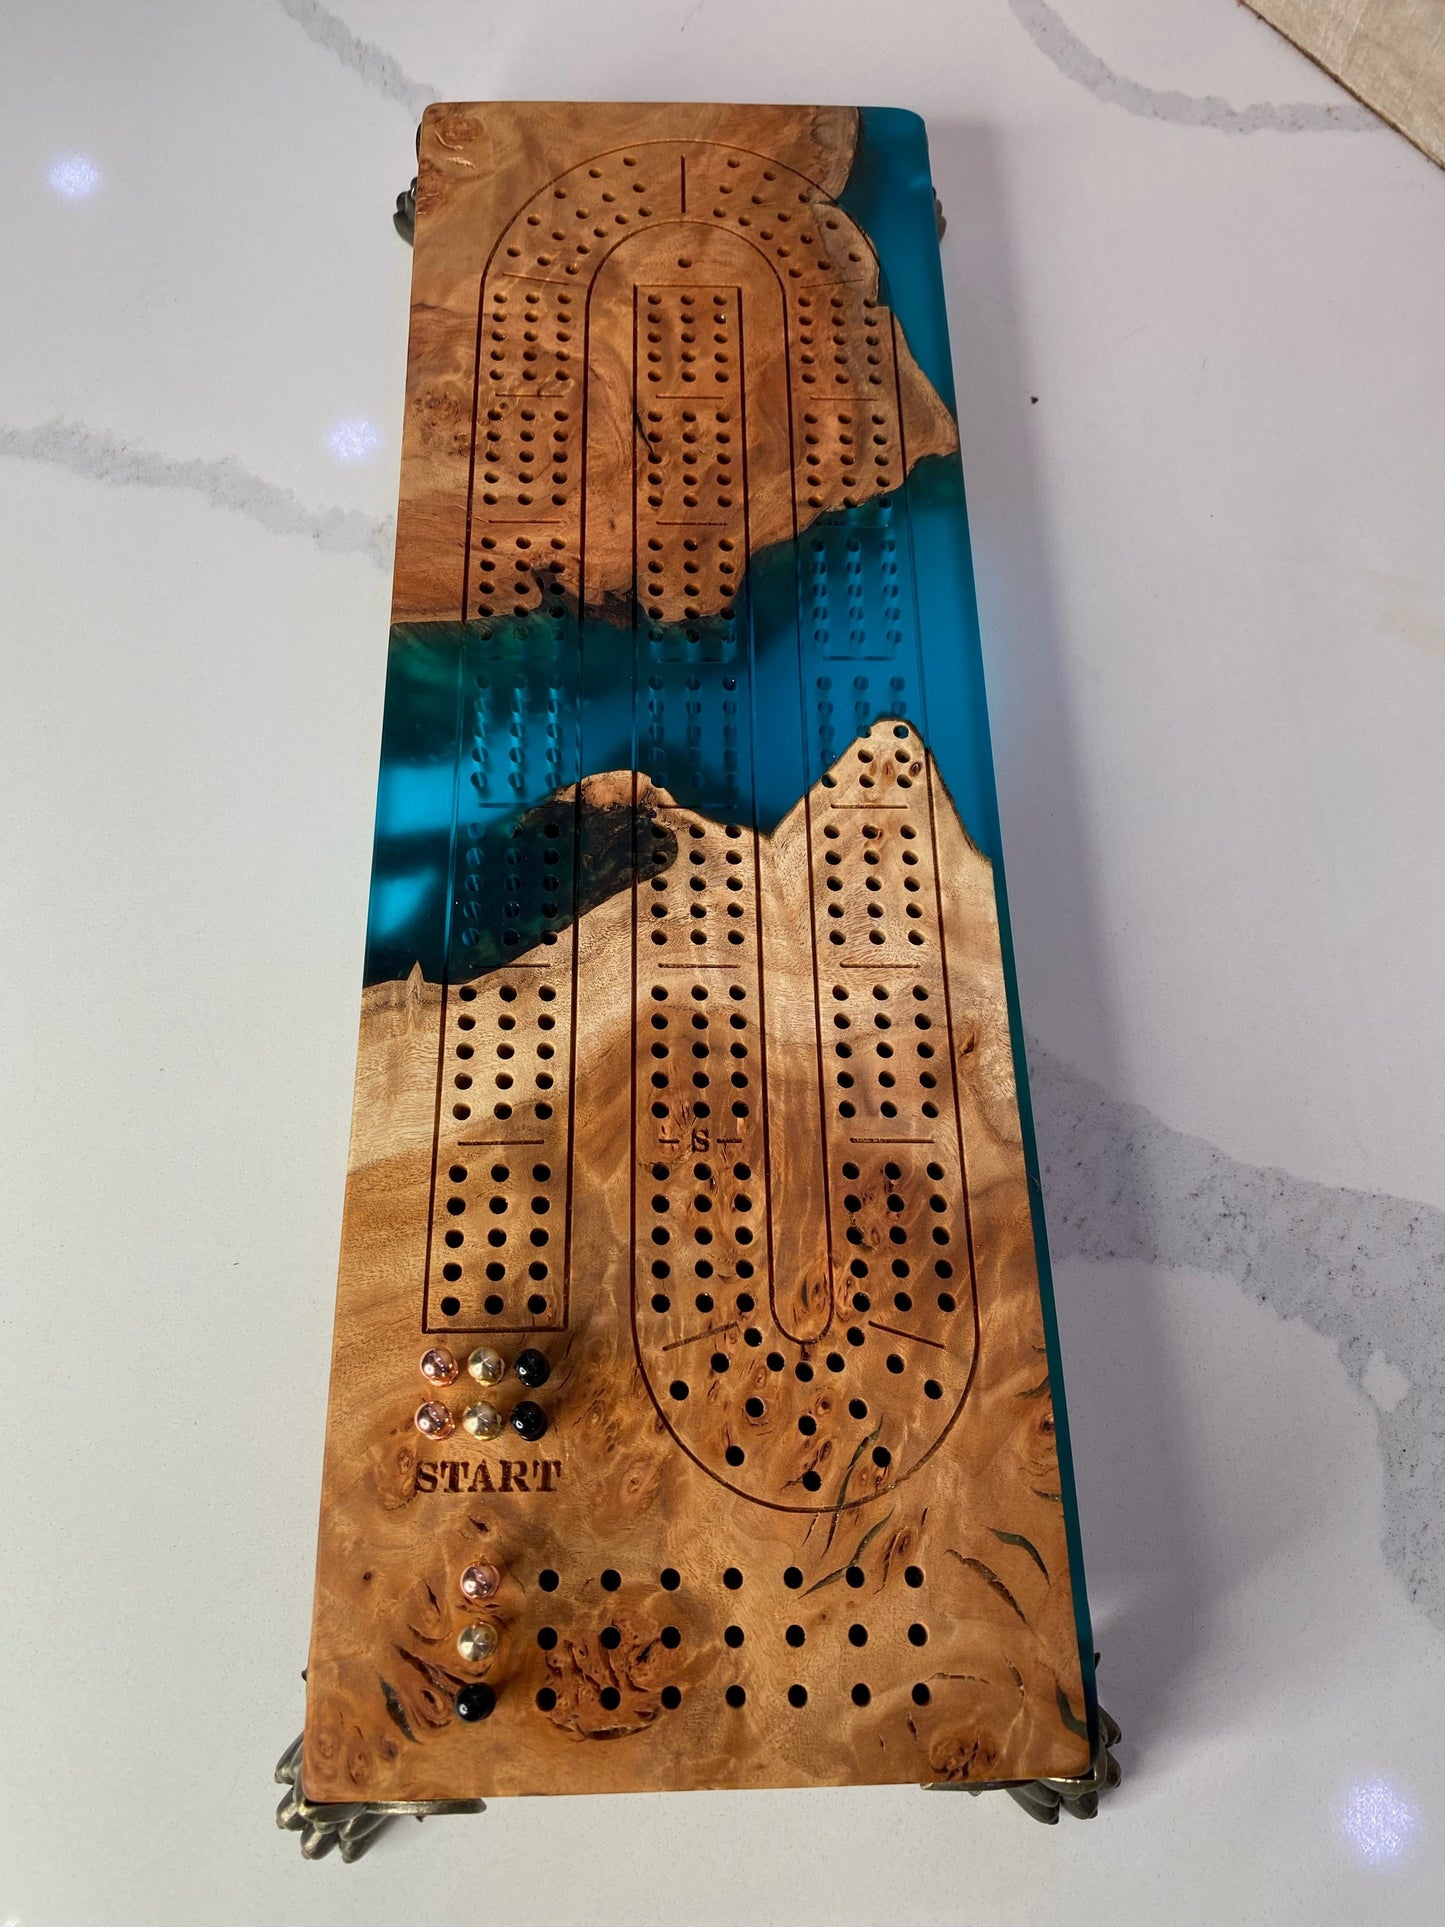 Aqua Blue Cribbage Board with Claw Feet